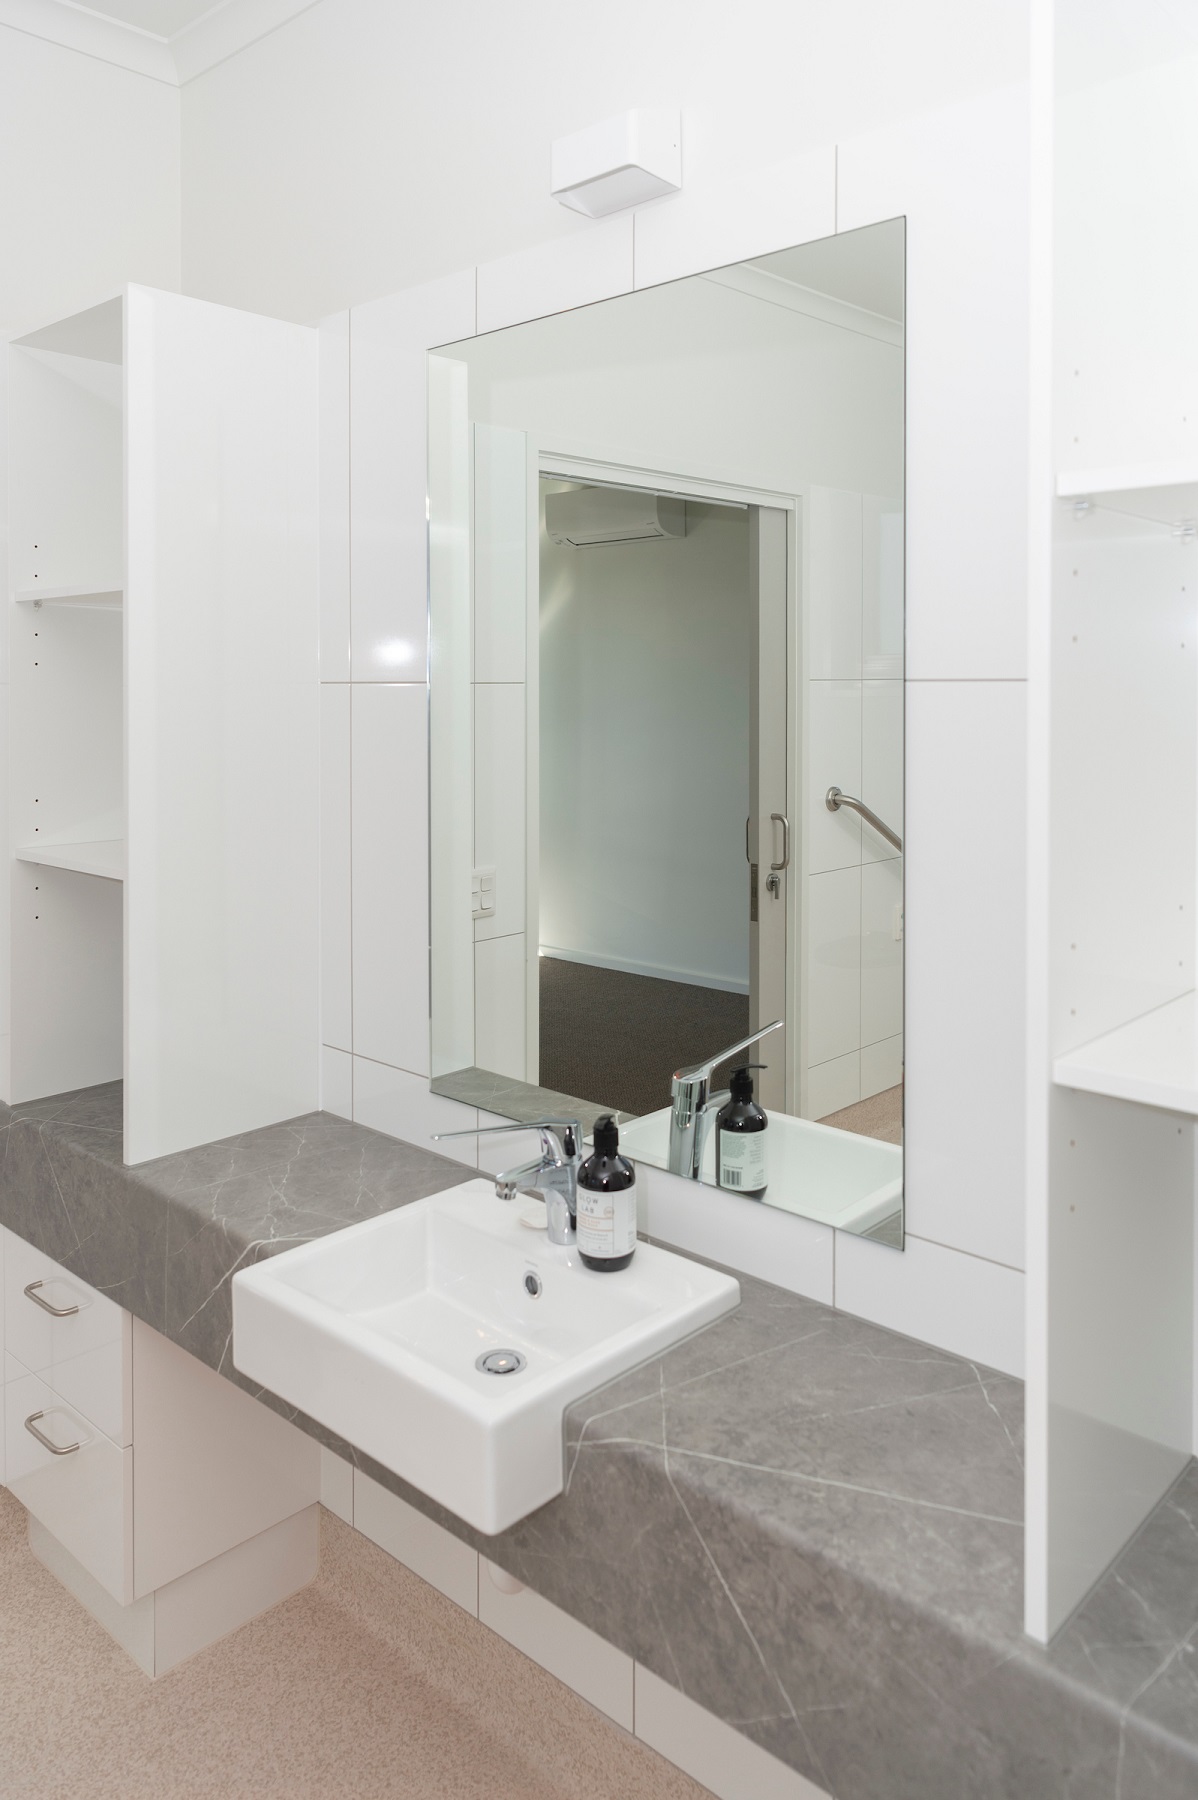 Accessible bathroom at McCrae, Mornington Peninsula SDA residential vacancy.